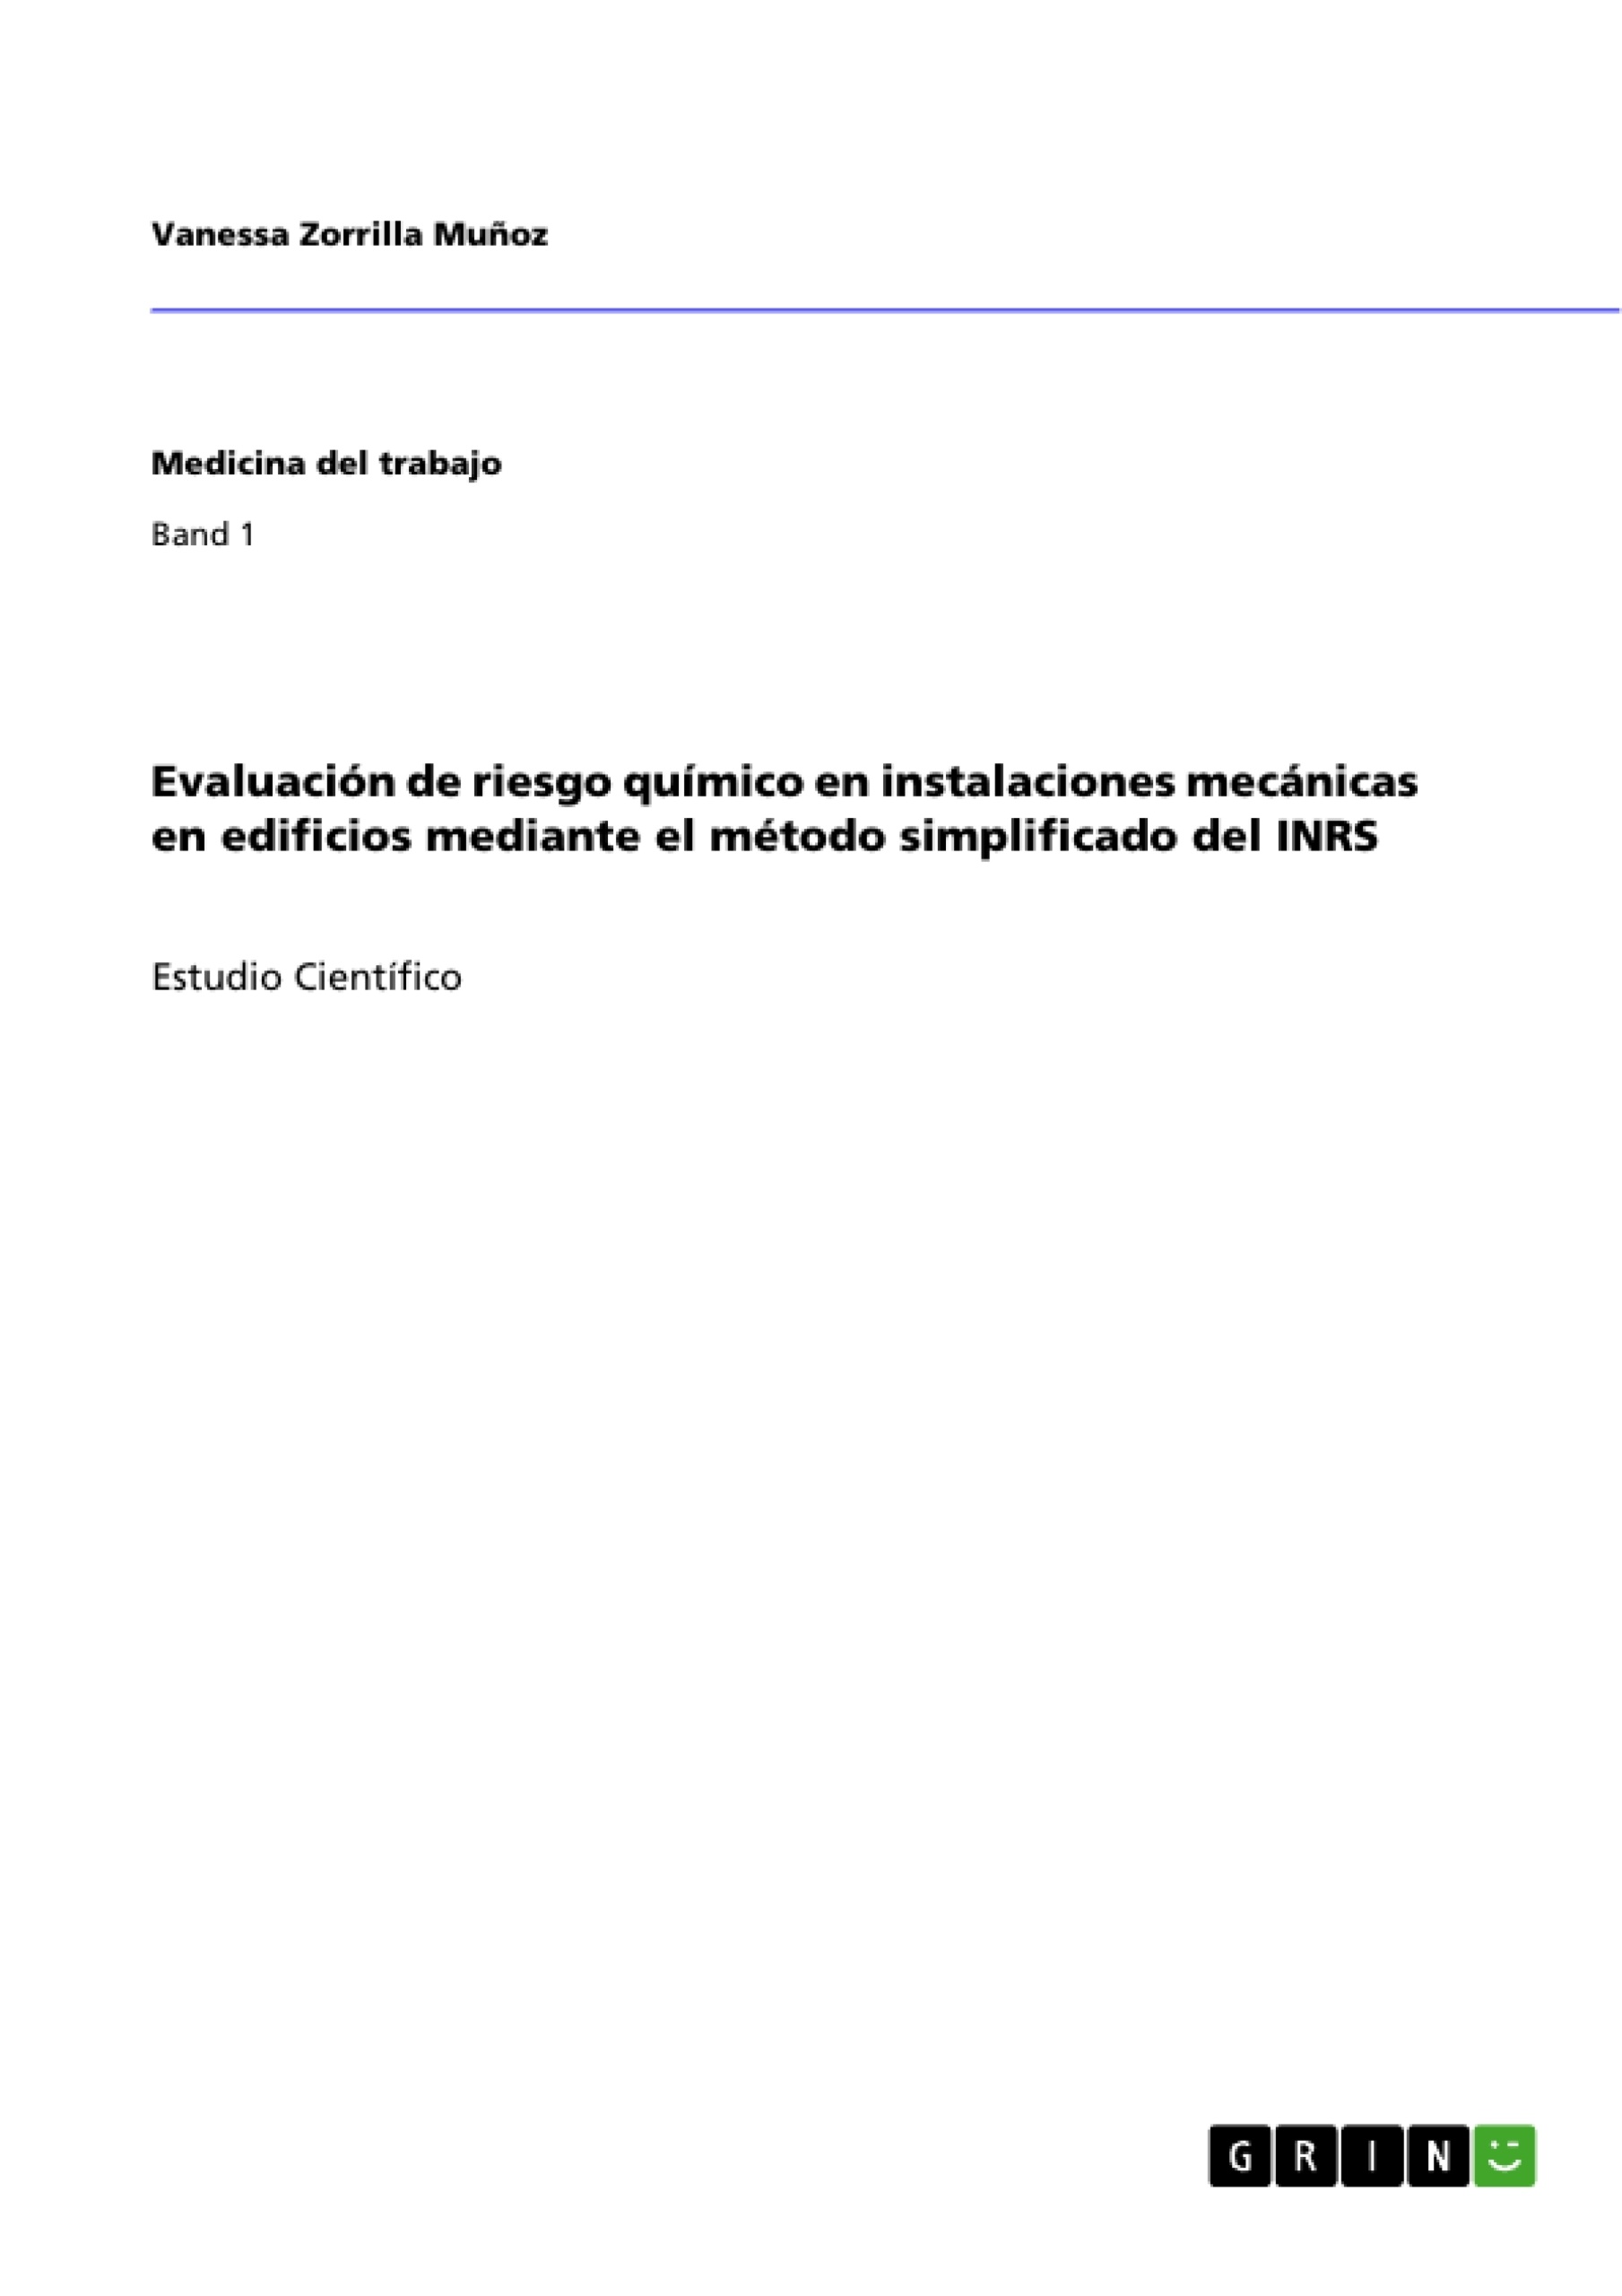 Titre: Evaluación de riesgo químico en instalaciones mecánicas en edificios mediante el método simplificado del INRS